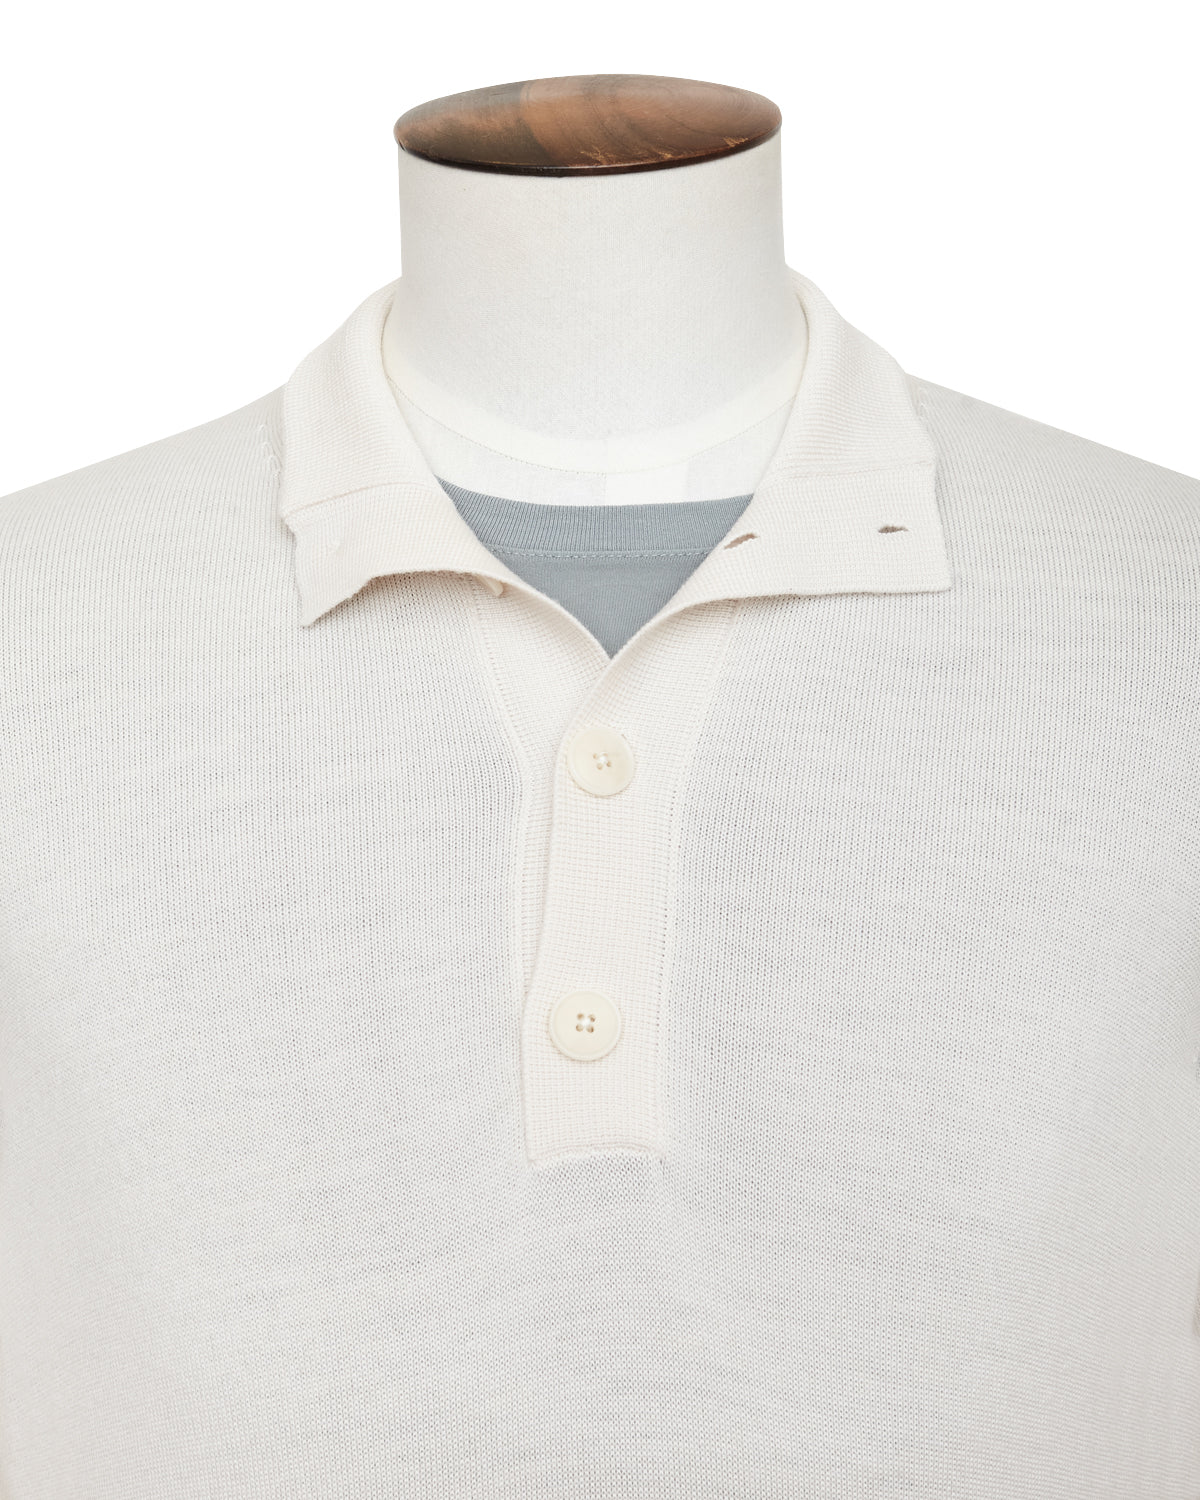 Off-White Merino Half-Button Sweater